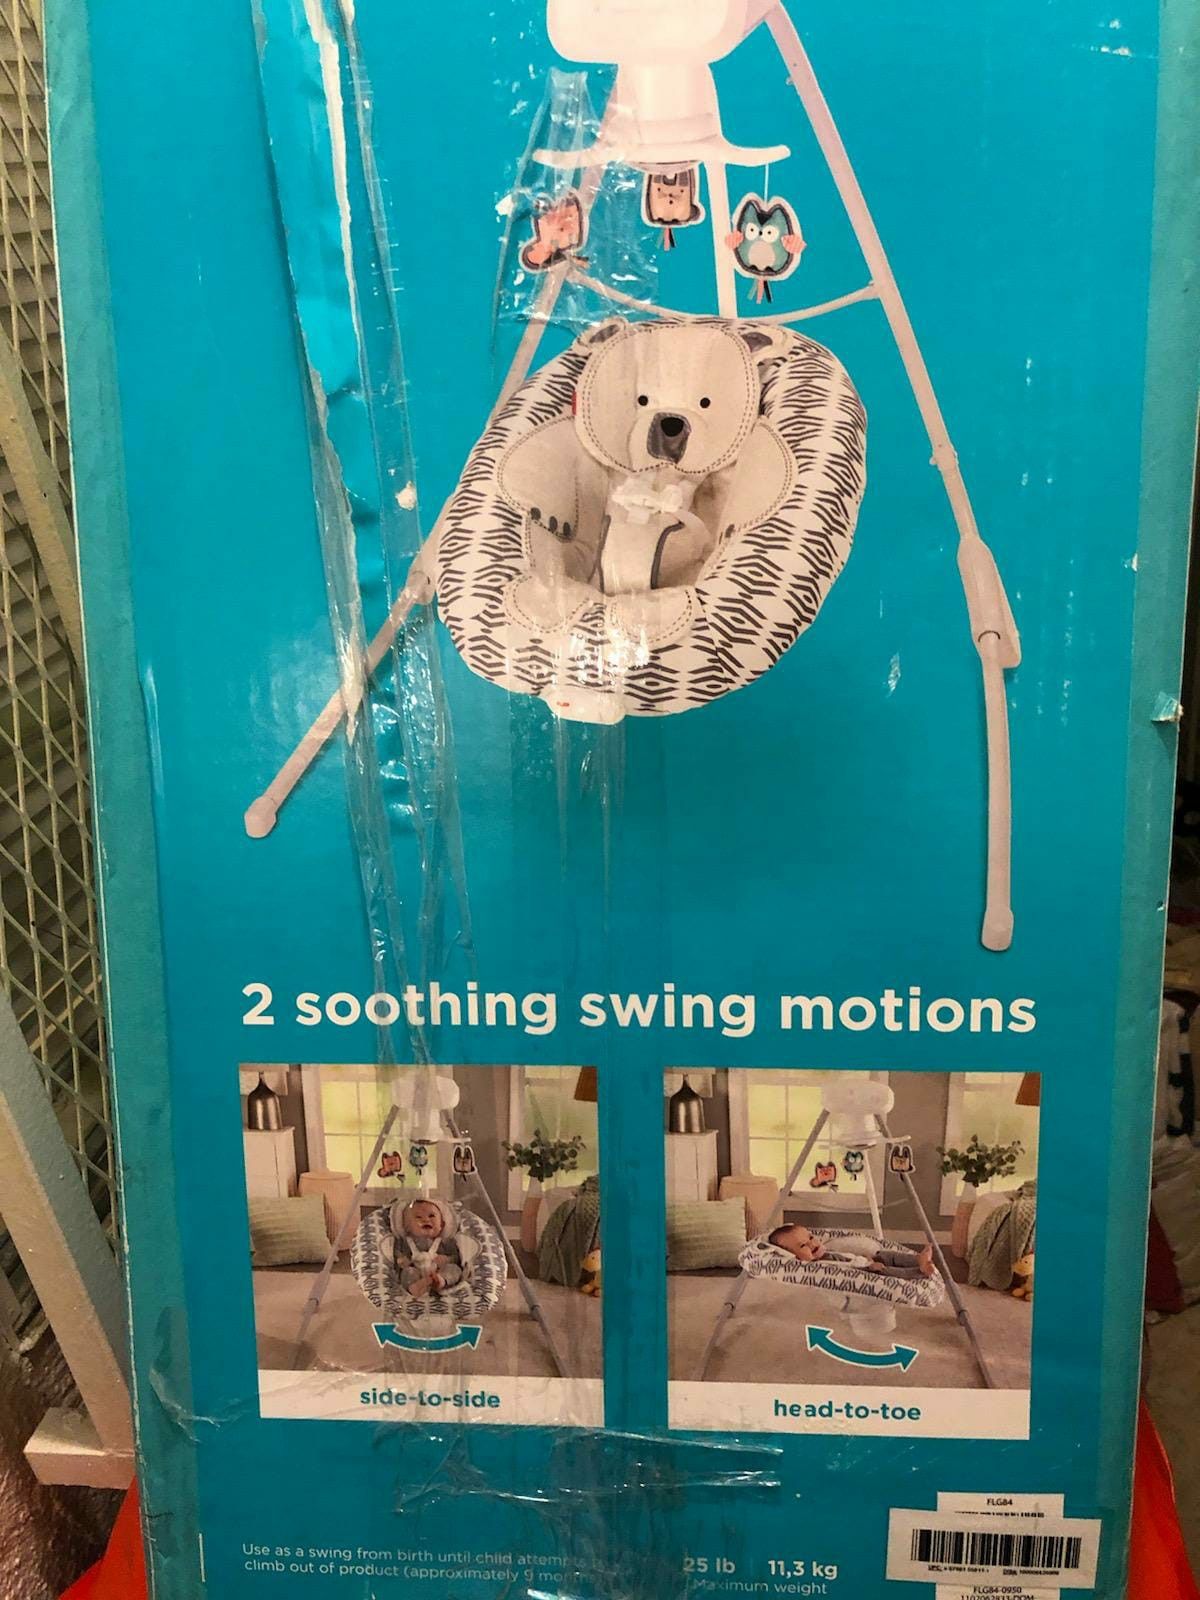 Swing bebe